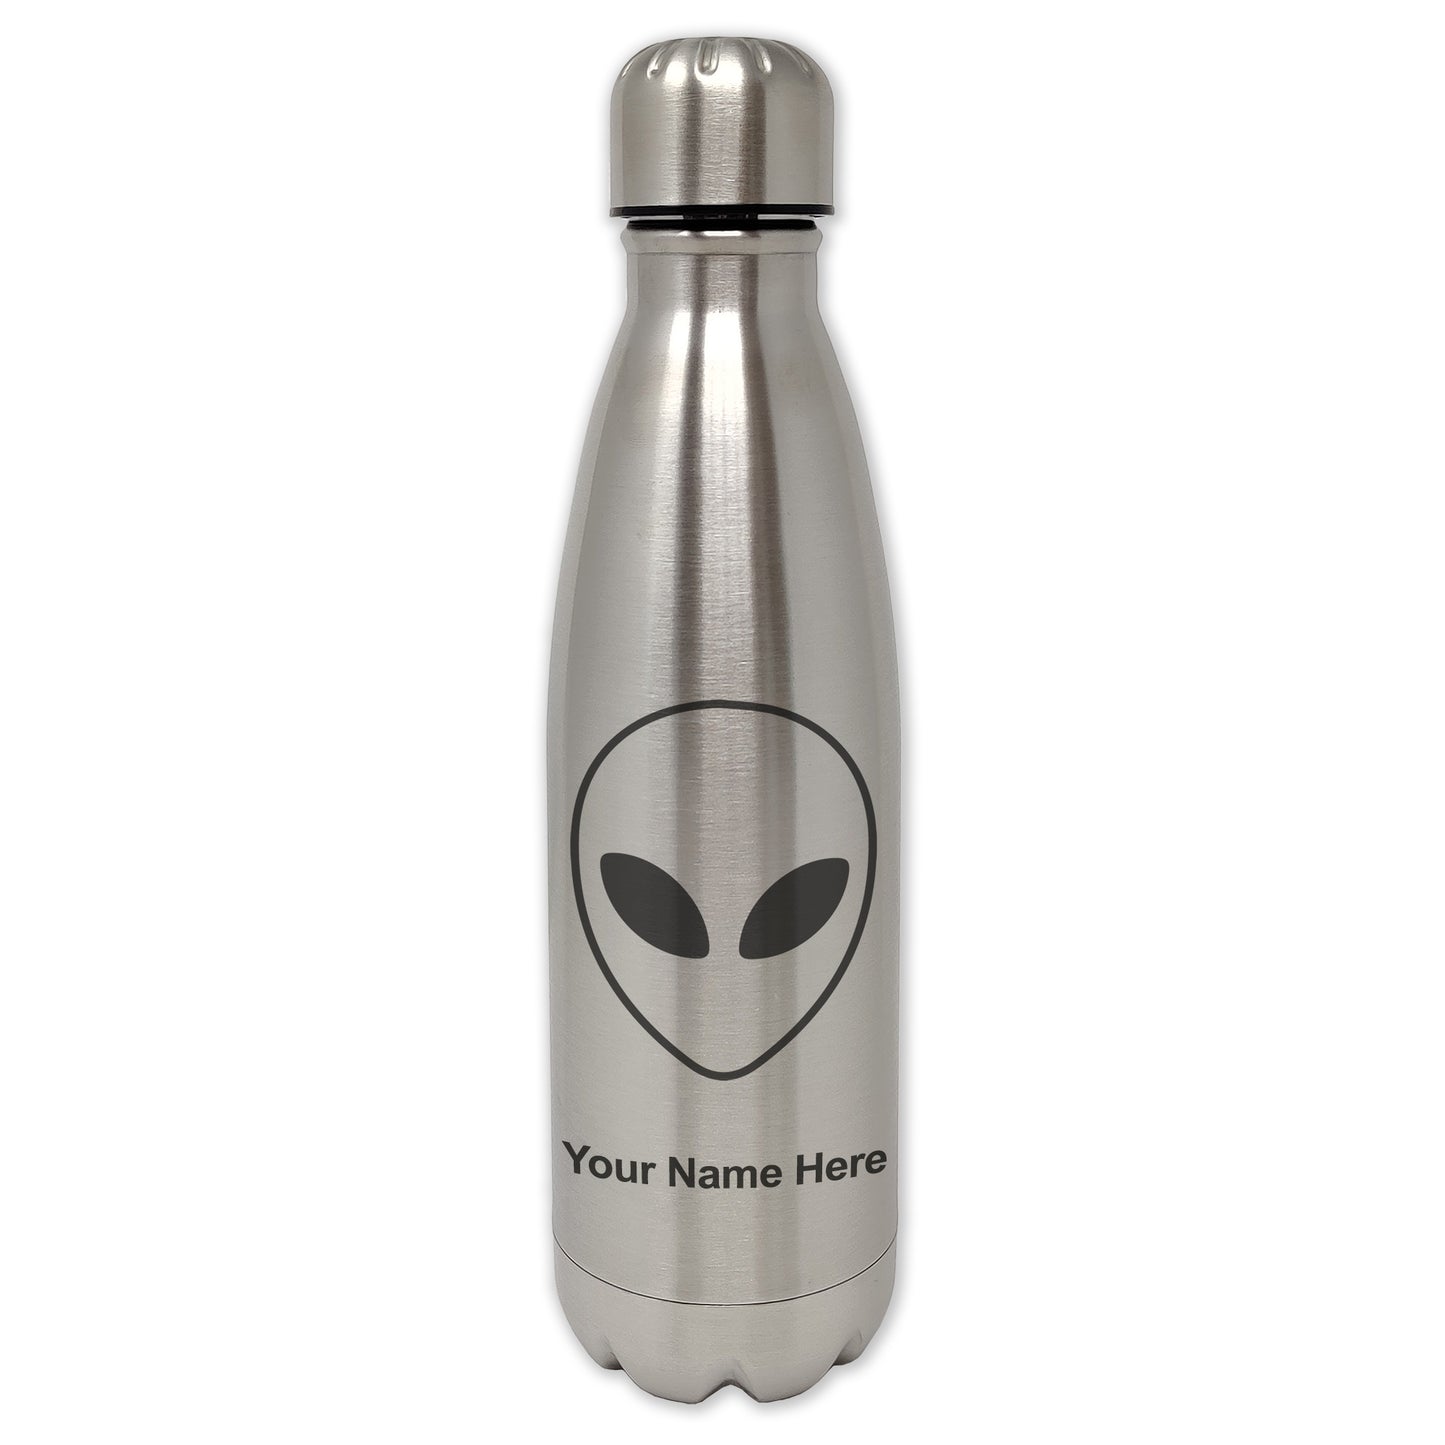 LaserGram Single Wall Water Bottle, Alien Head, Personalized Engraving Included